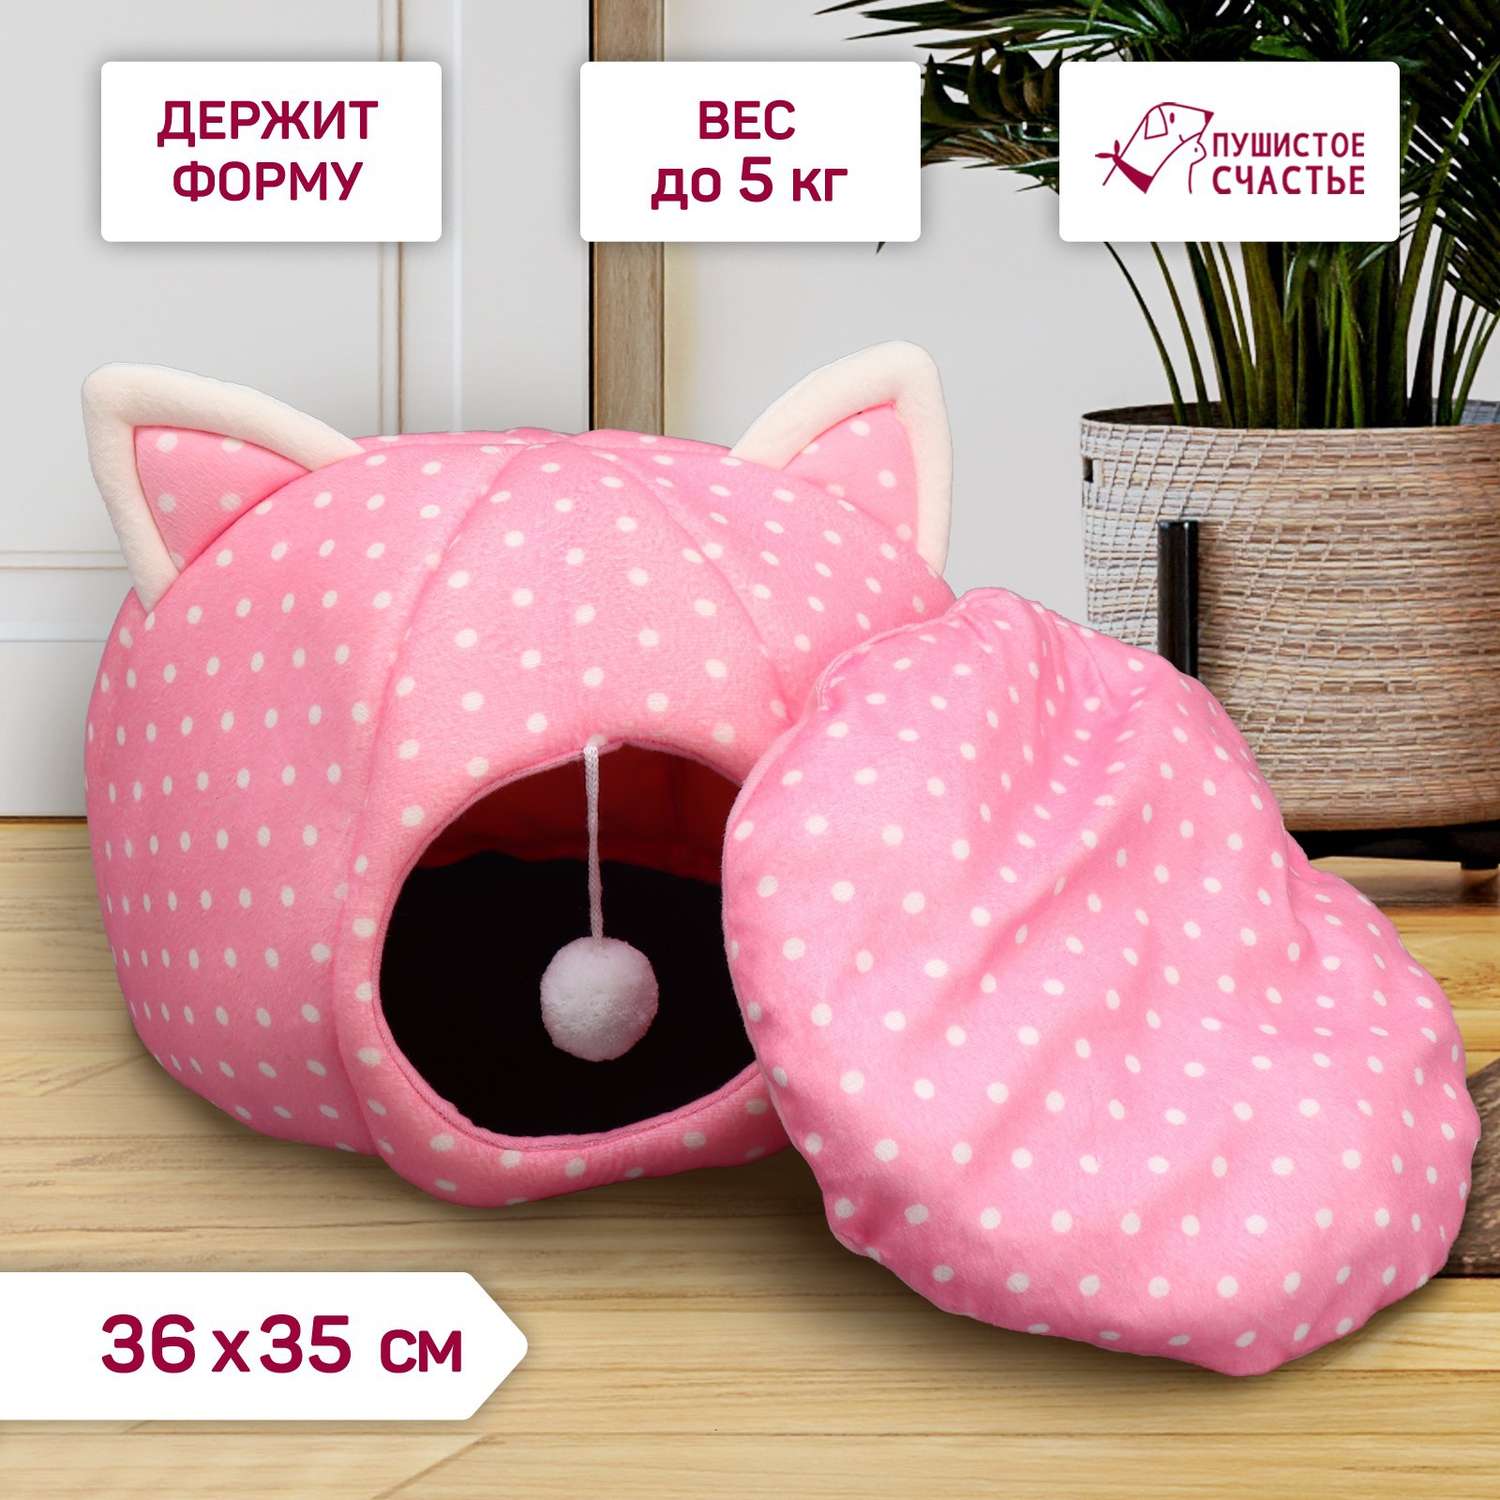 Домик Пушистое счастье для животных «Котик» 36х35 см розовый - фото 1